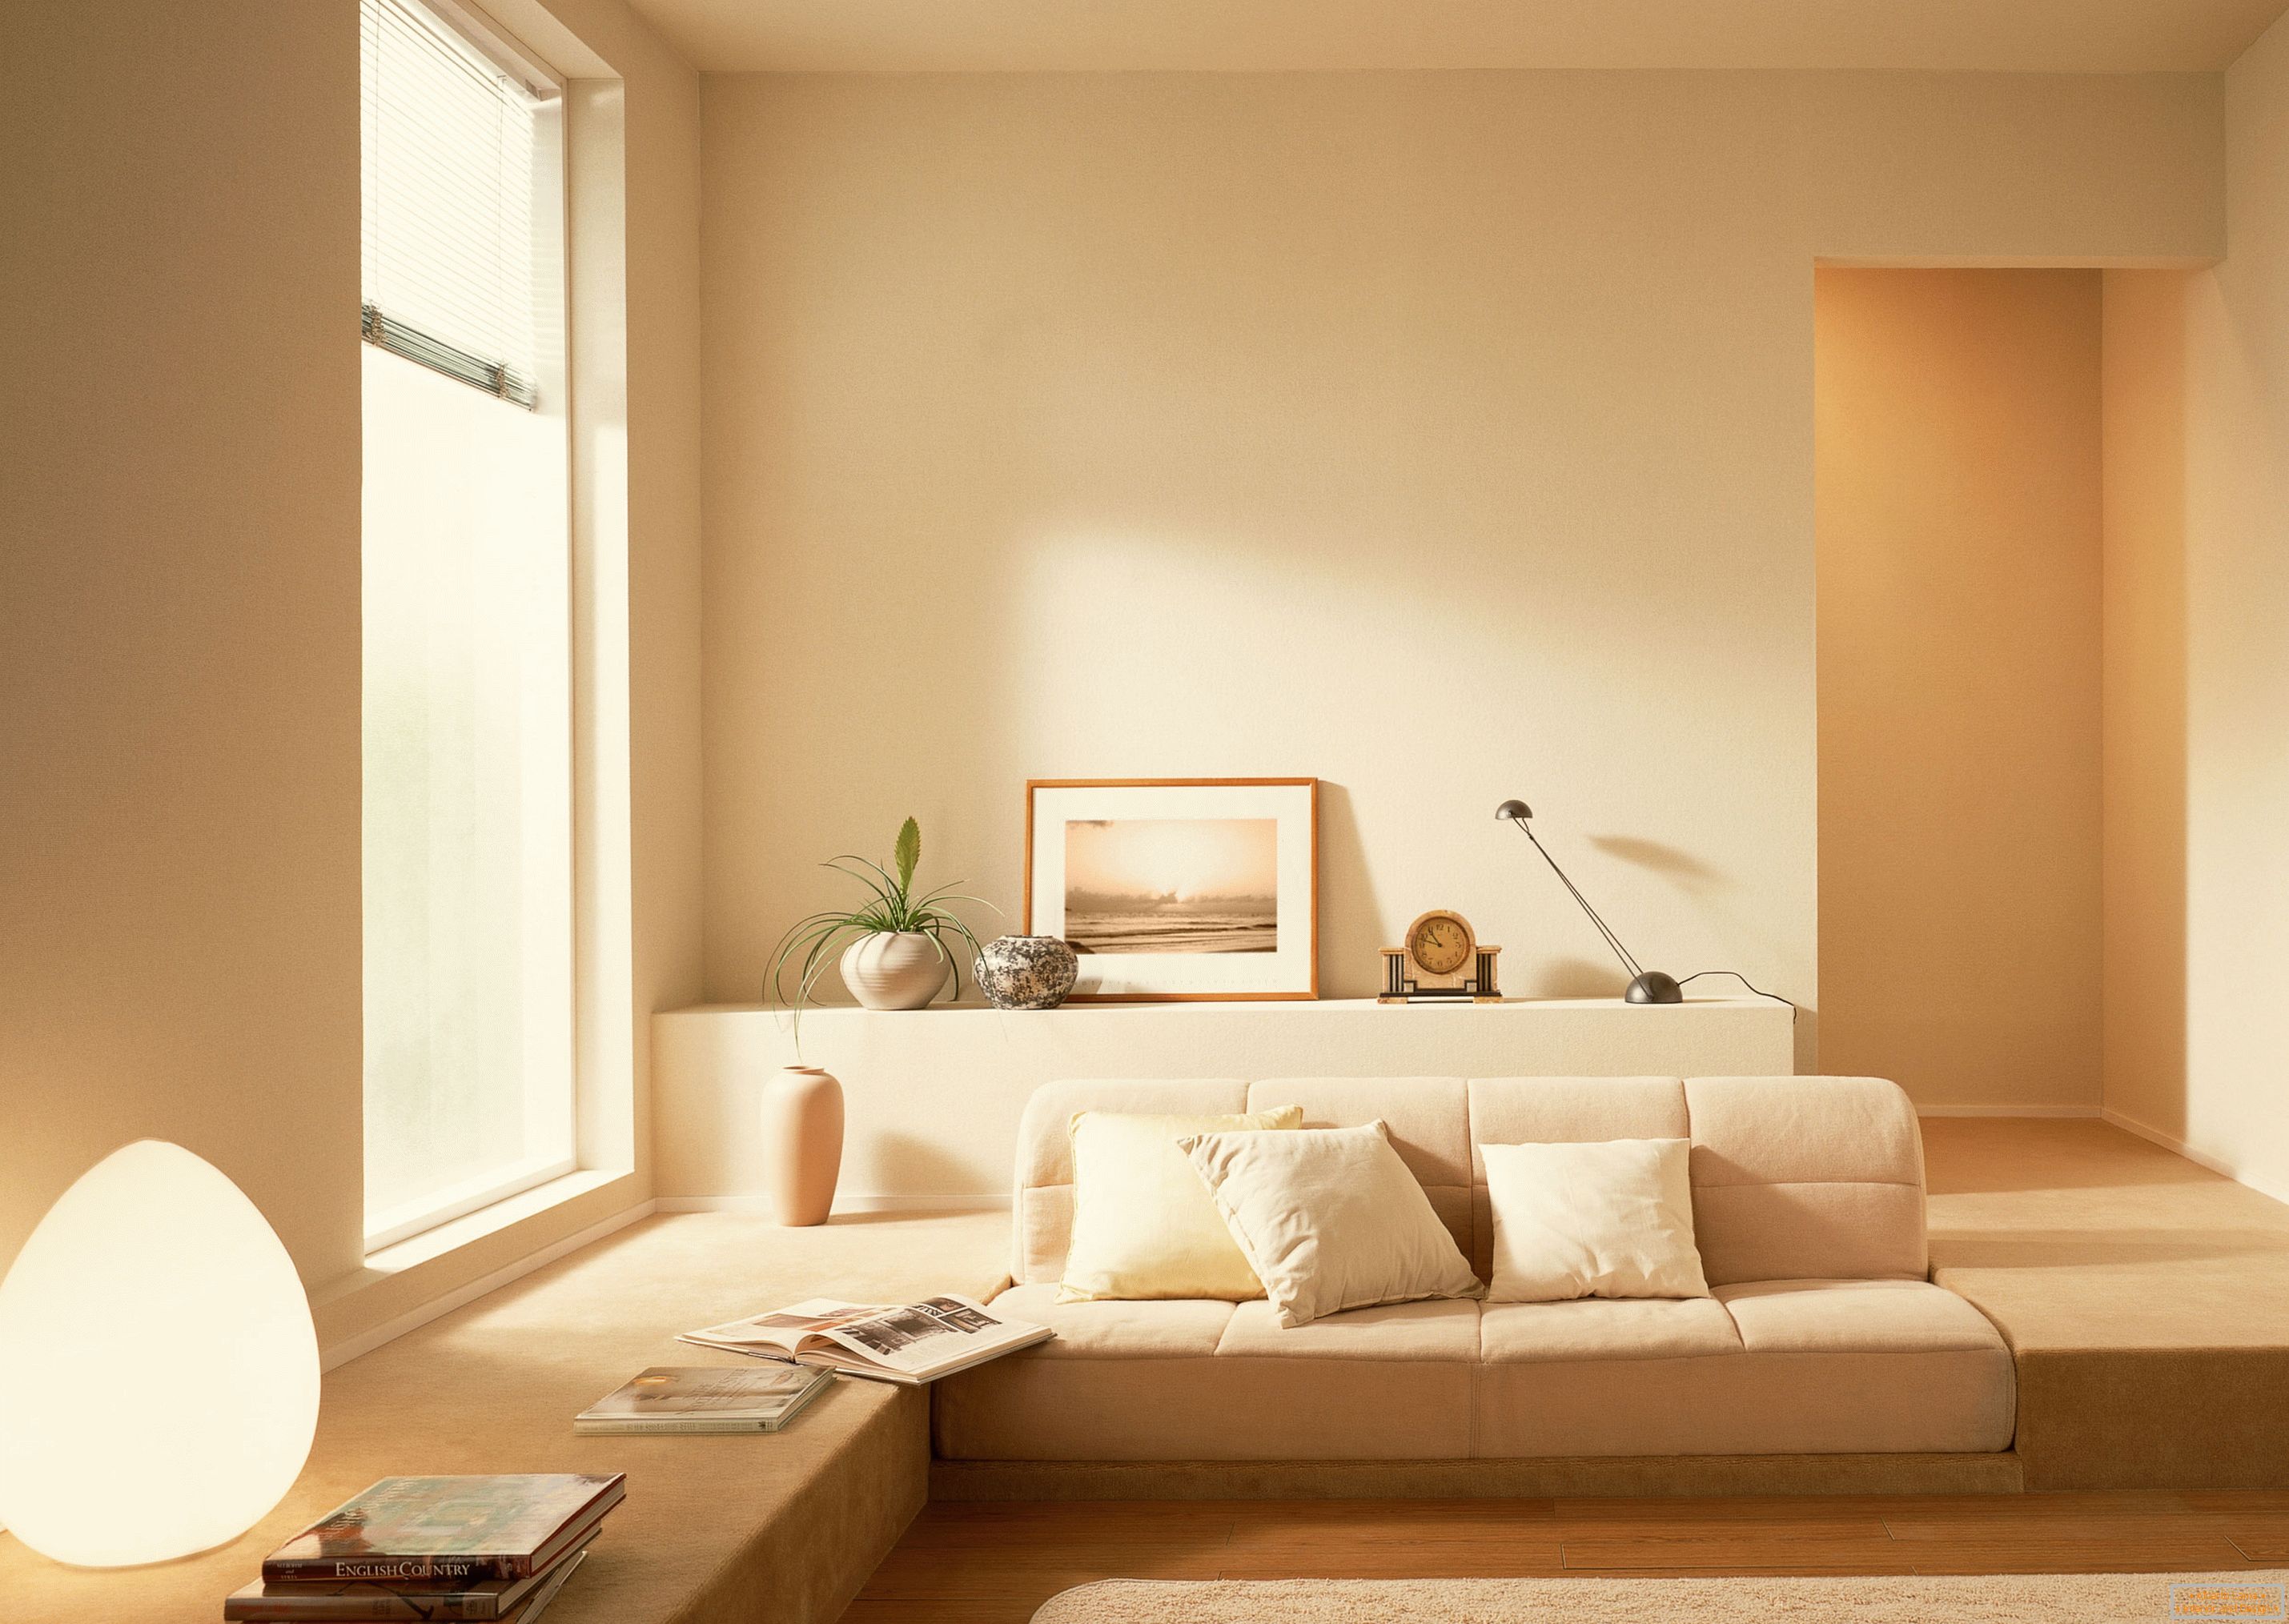 De acuerdo con el estilo del minimalismo, se utilizó un tono beige tranquilo para organizar el interior de la sala de estar.